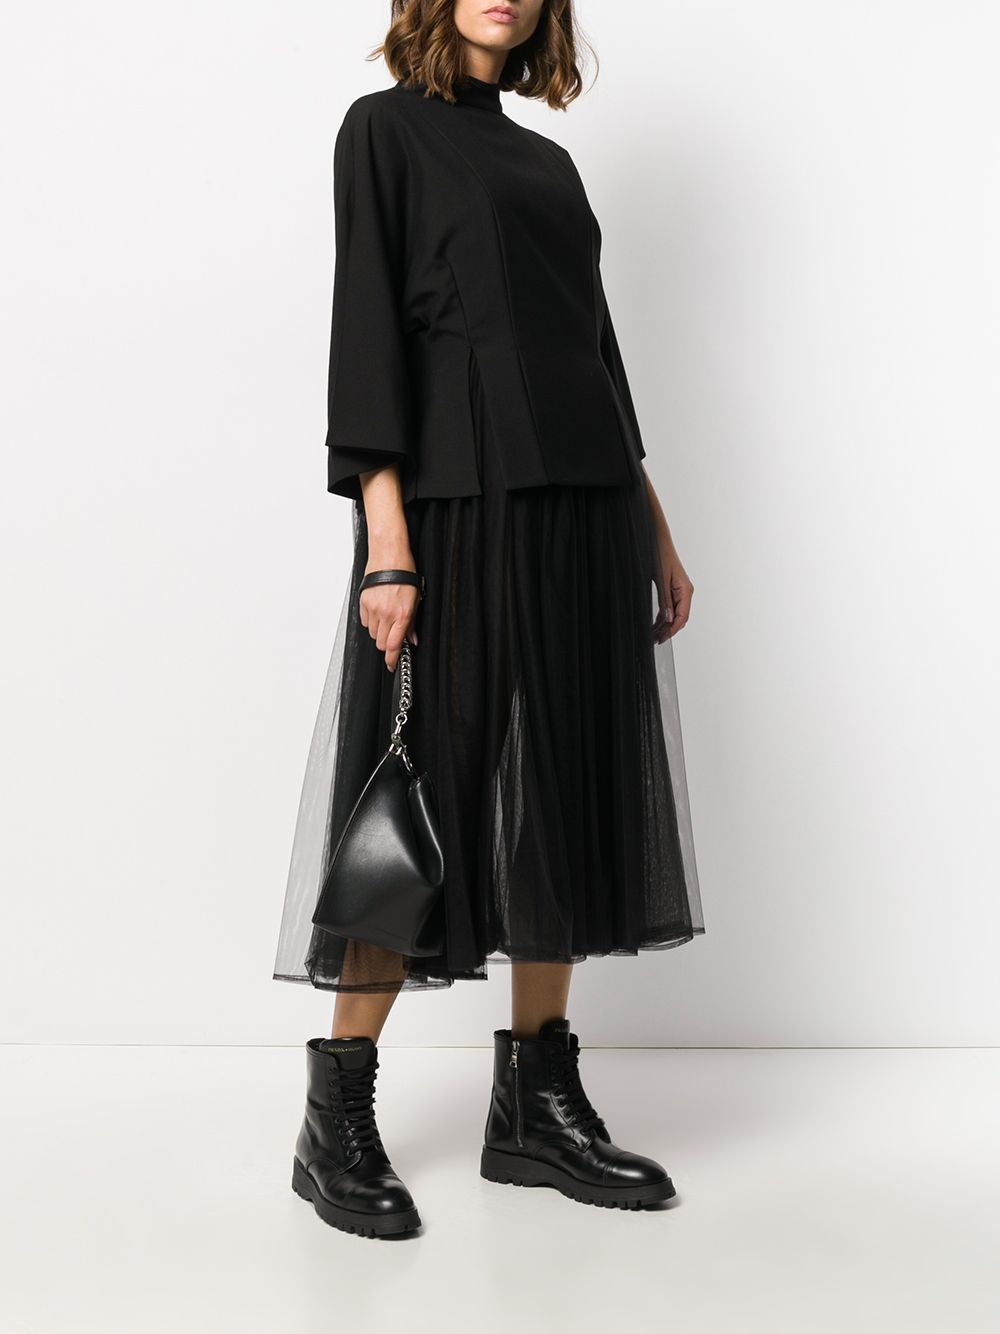 фото Comme Des Garçons Noir Kei Ninomiya платье с контрастной вставкой из тюля